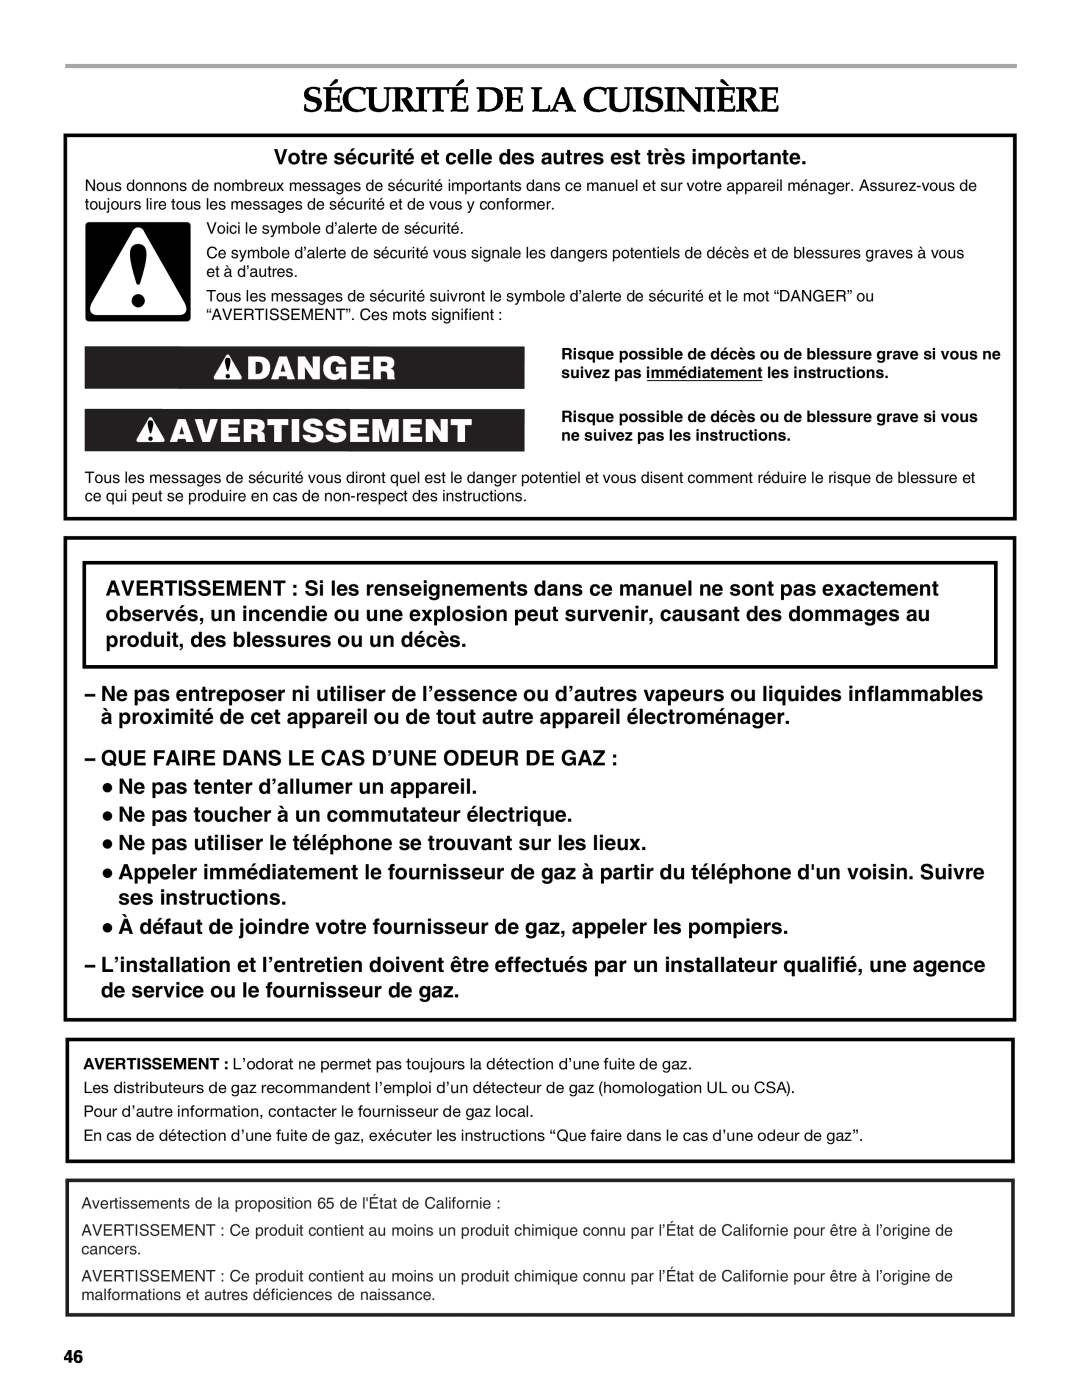 KitchenAid KDRU763.KDRU manual Sécurité De La Cuisinière, Danger Avertissement 